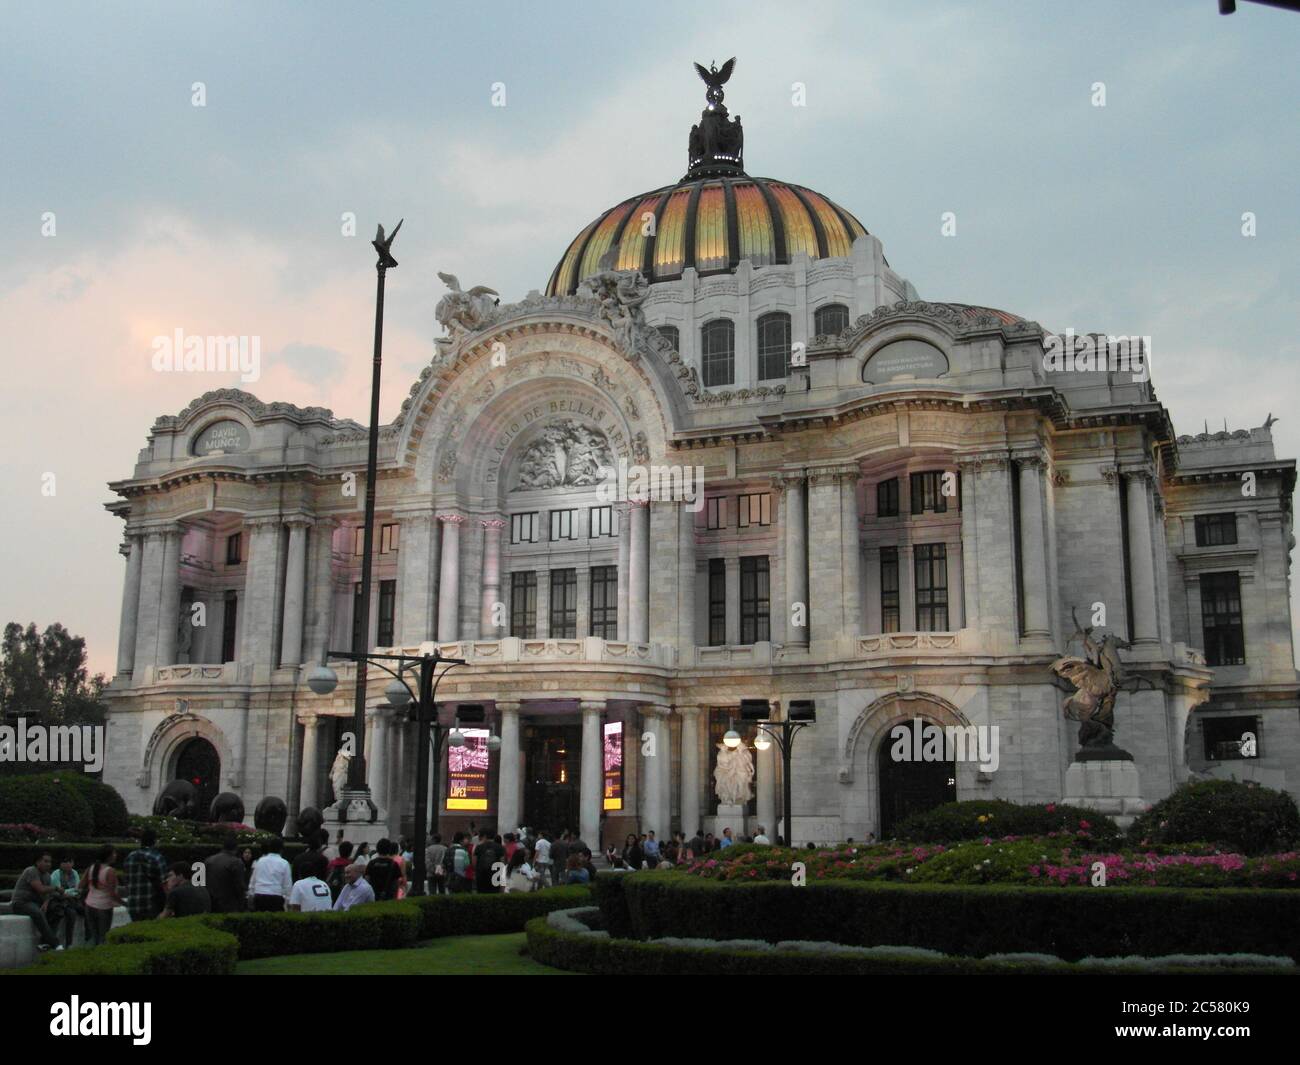 Mexico est vivant et très belle! Architecture inhabituelle de l'Amérique latine, motifs espagnols et rues merveilleuses. Aucun filtre Banque D'Images